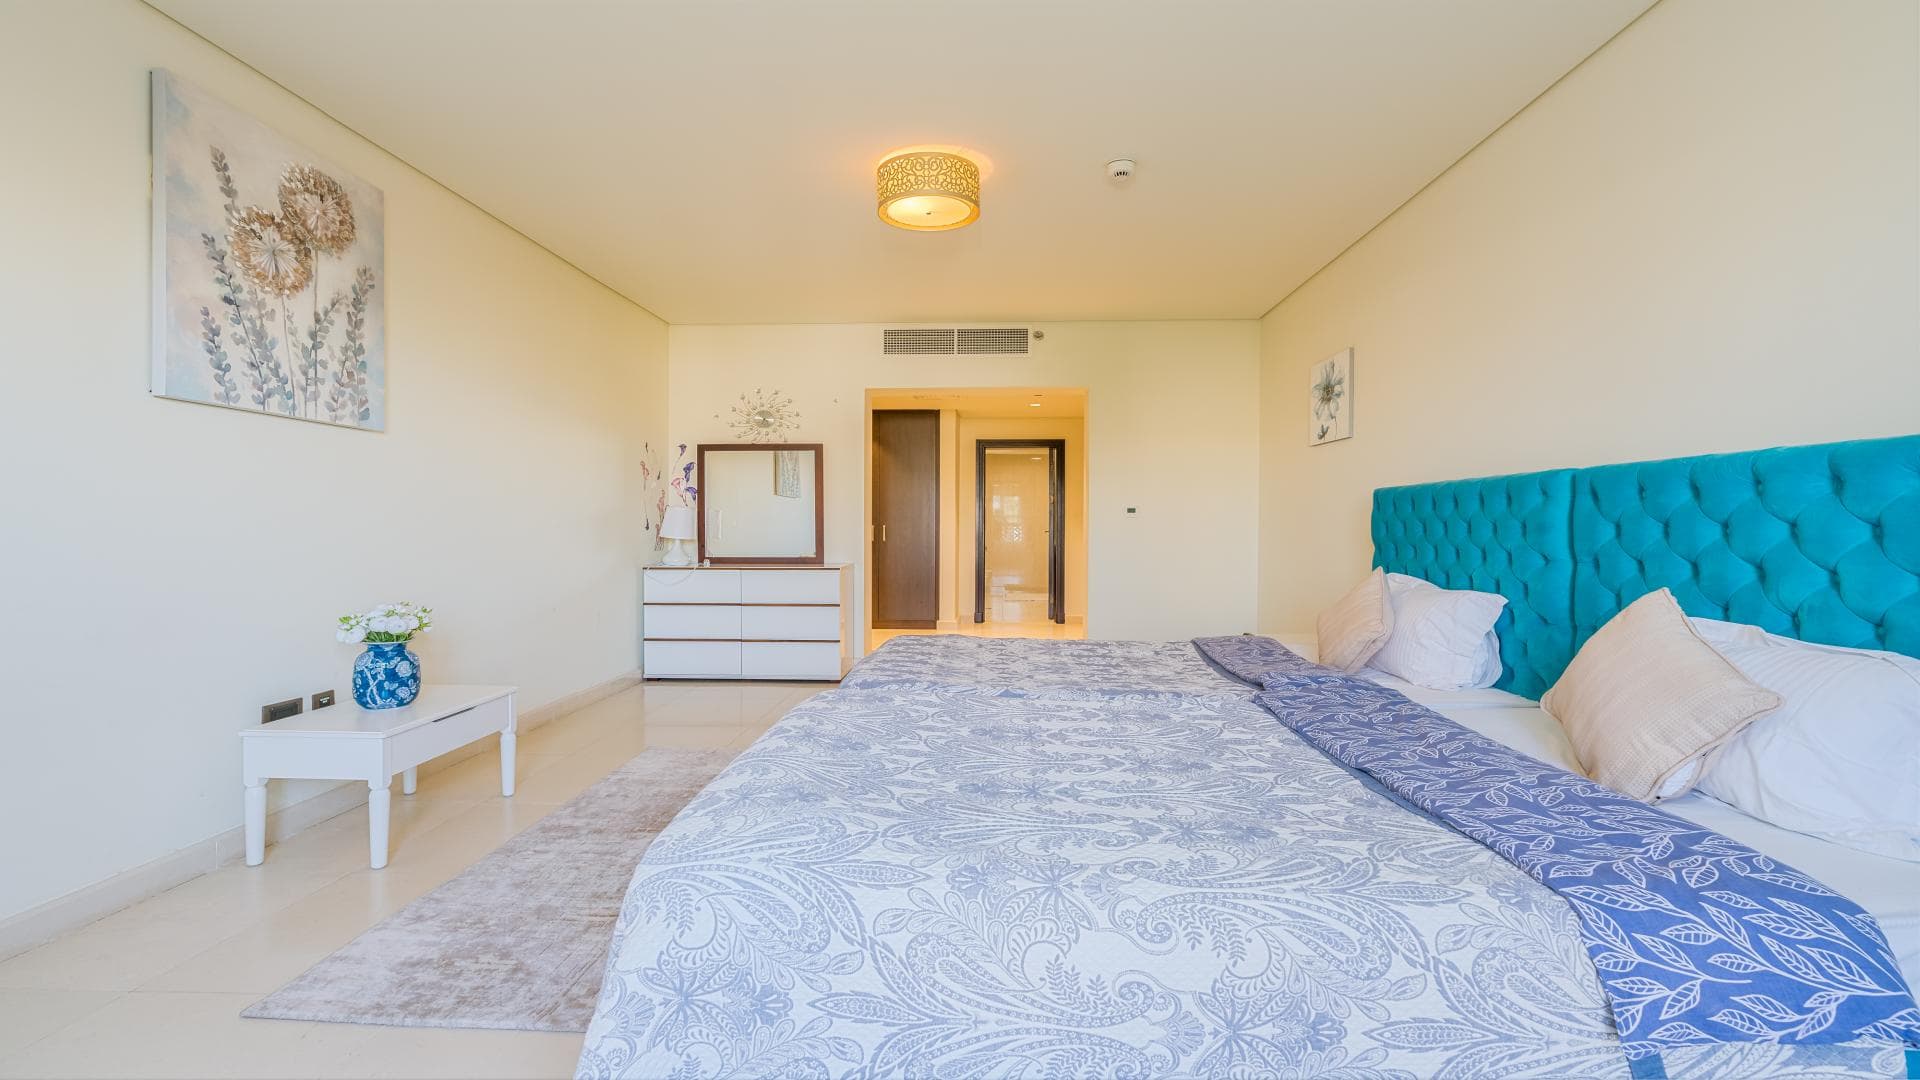 2 Bedroom Apartment For Rent Kingdom Of Sheba Lp19542 13352eca84ad5f00.jpg